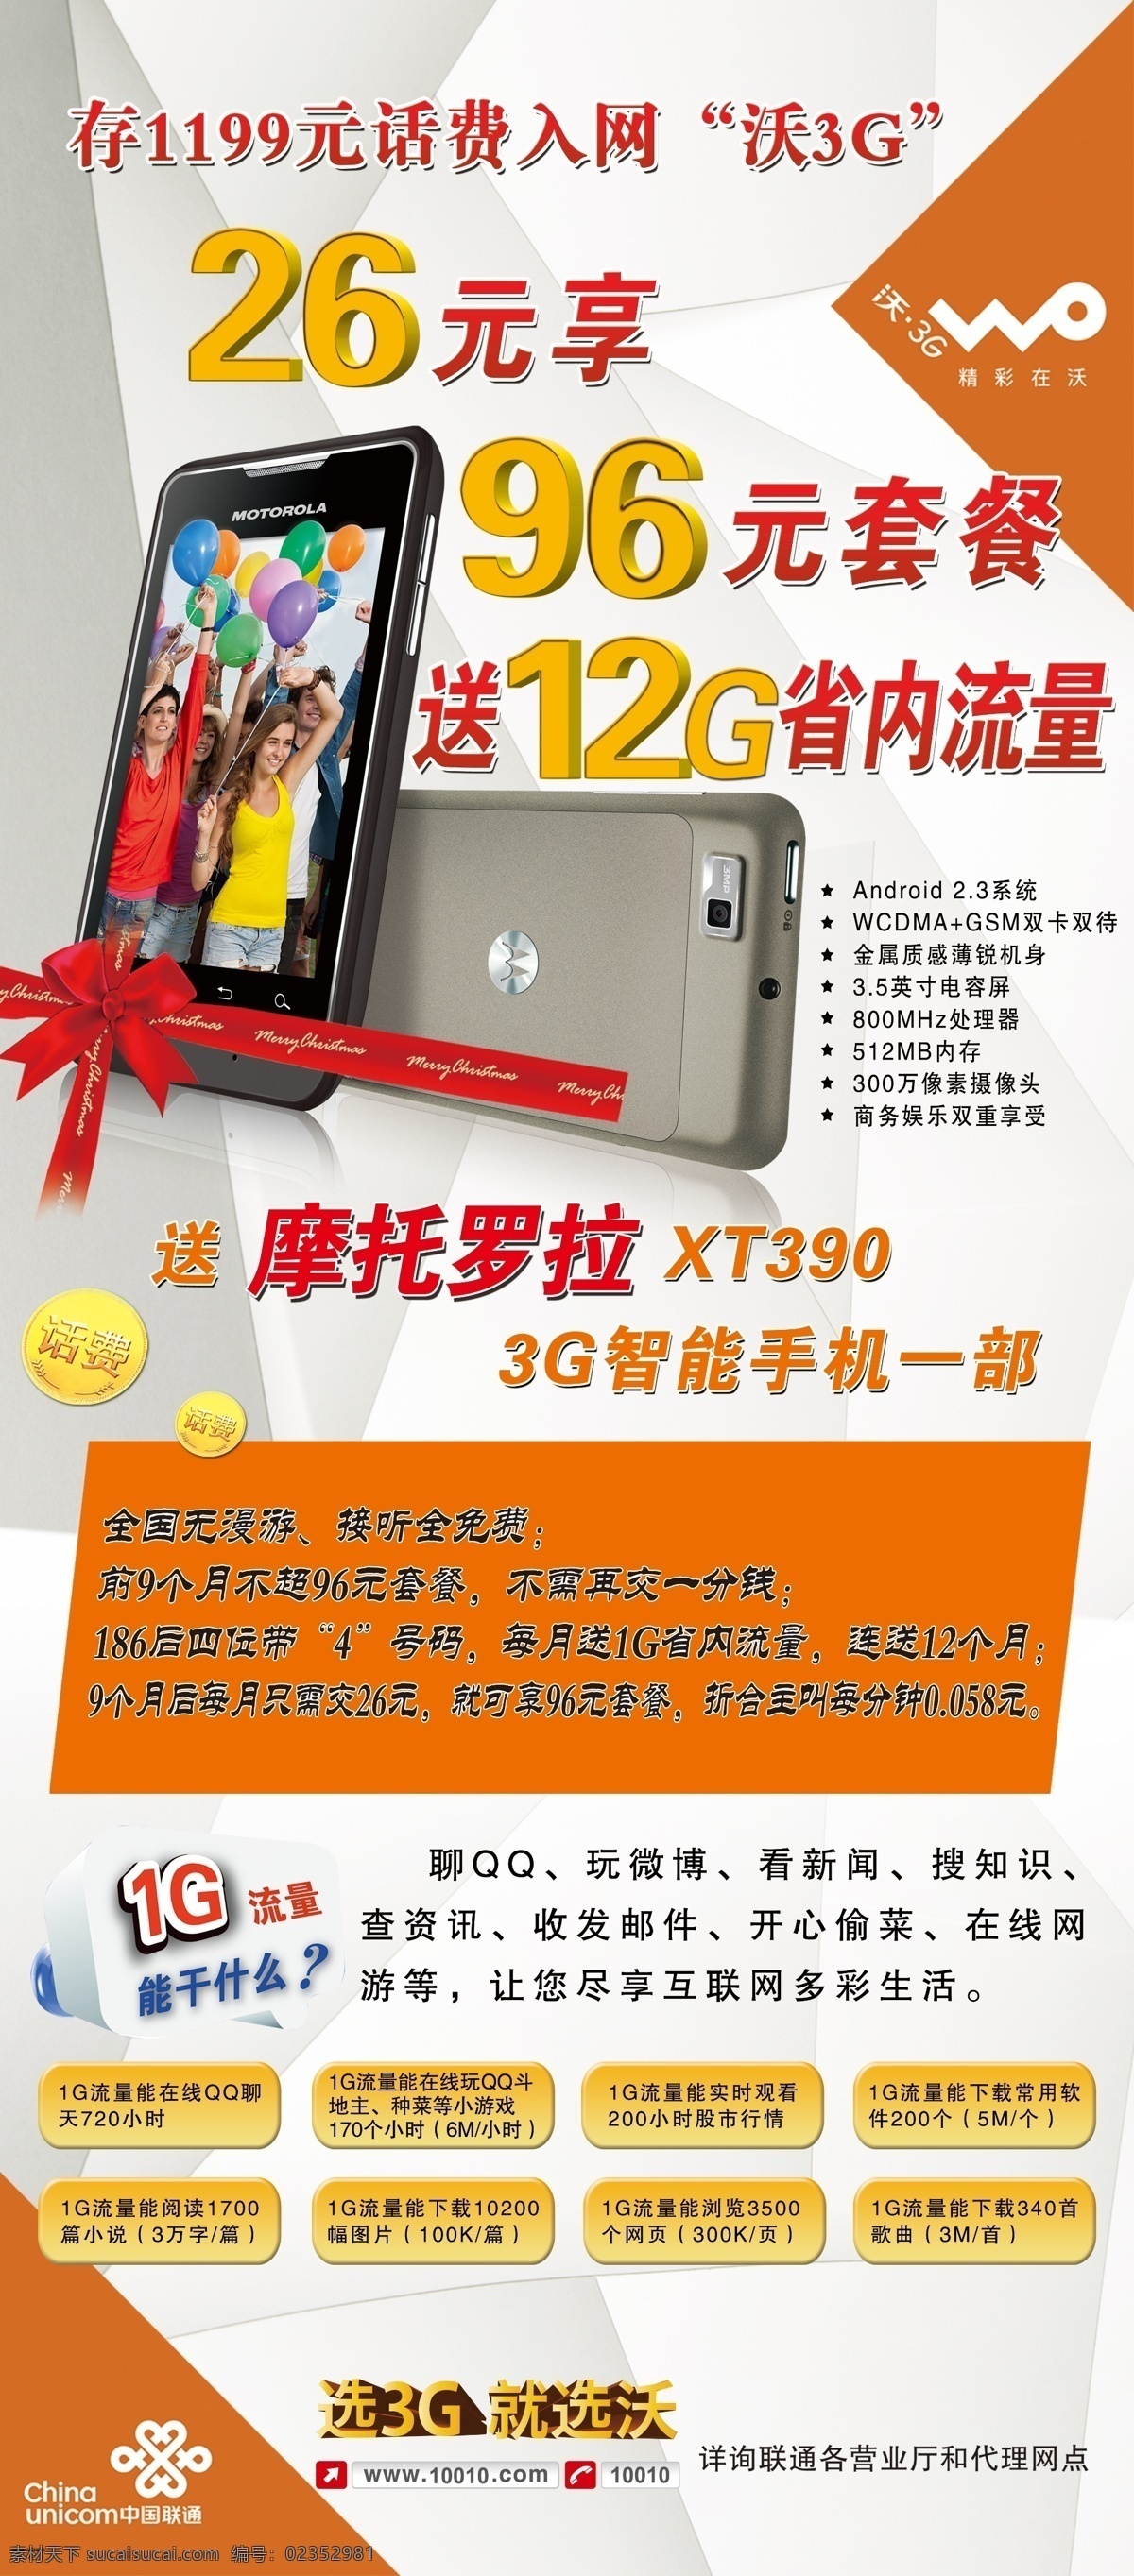 手机展架 联通 中国联通 展架 海报 手机 摩托罗拉 xt390 3g 沃 1g流量 干什么 选3g就选沃 话费 存 底纹 广告设计模板 源文件